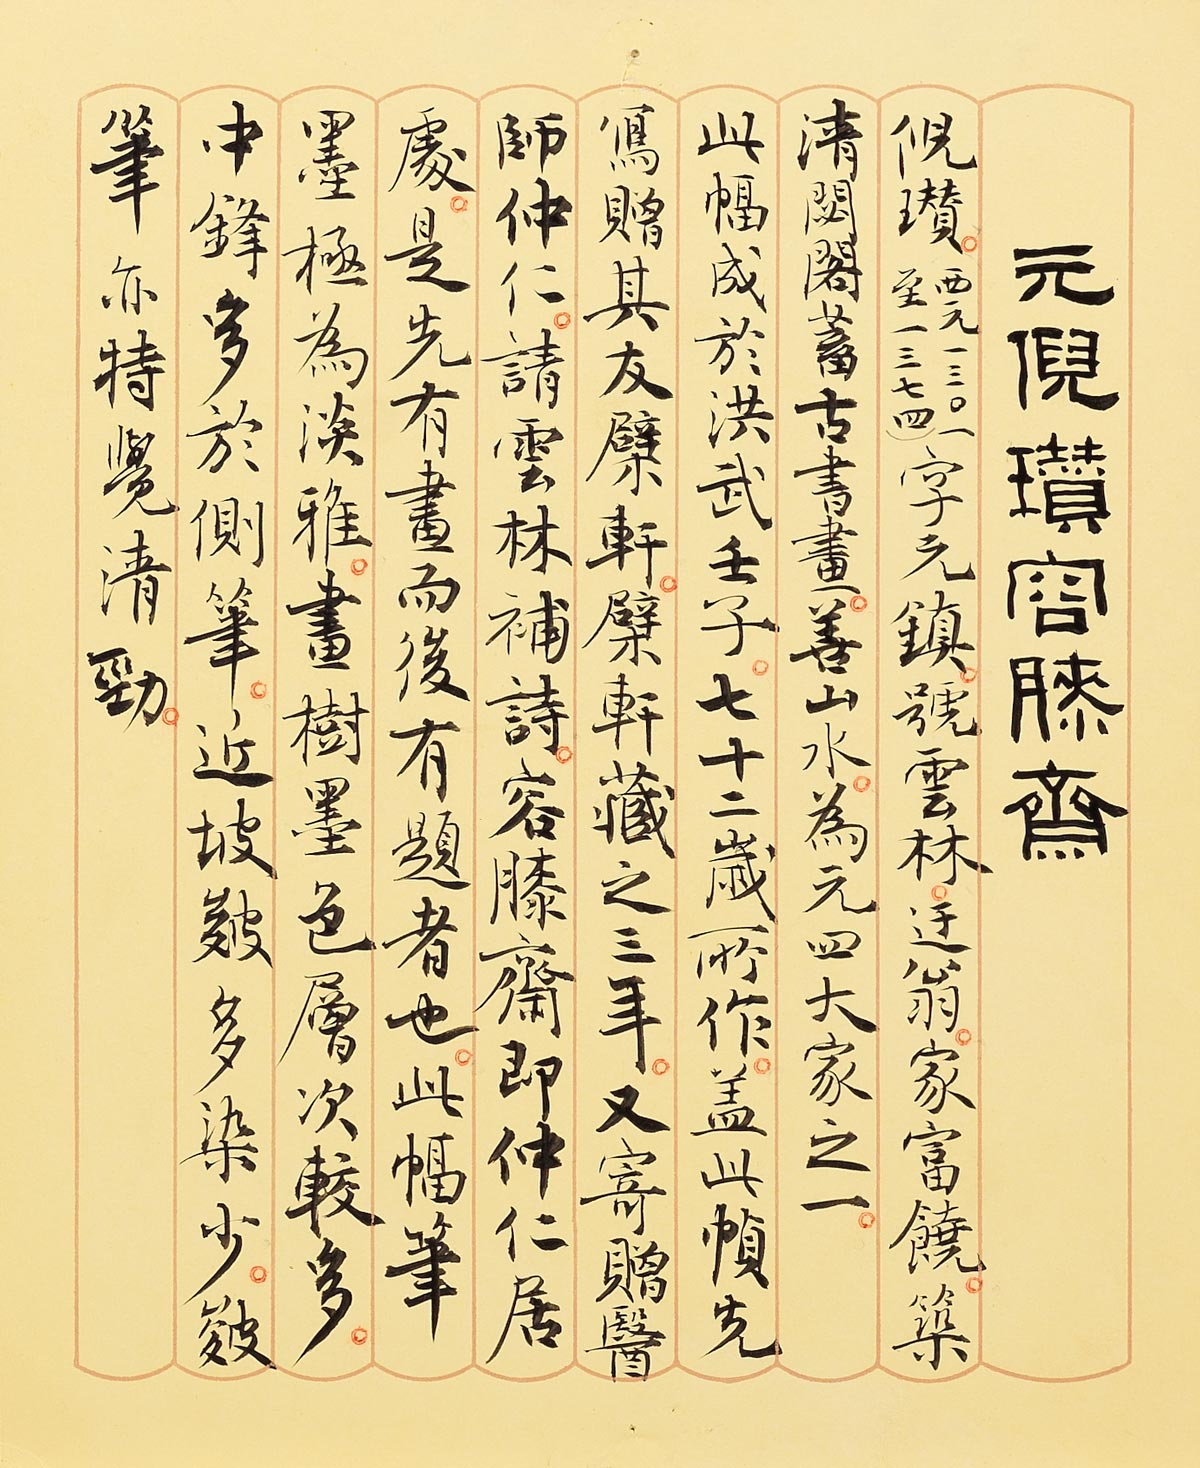 民国50年代（1960年代）中期に傅申氏が作成した墨書のキャプション。